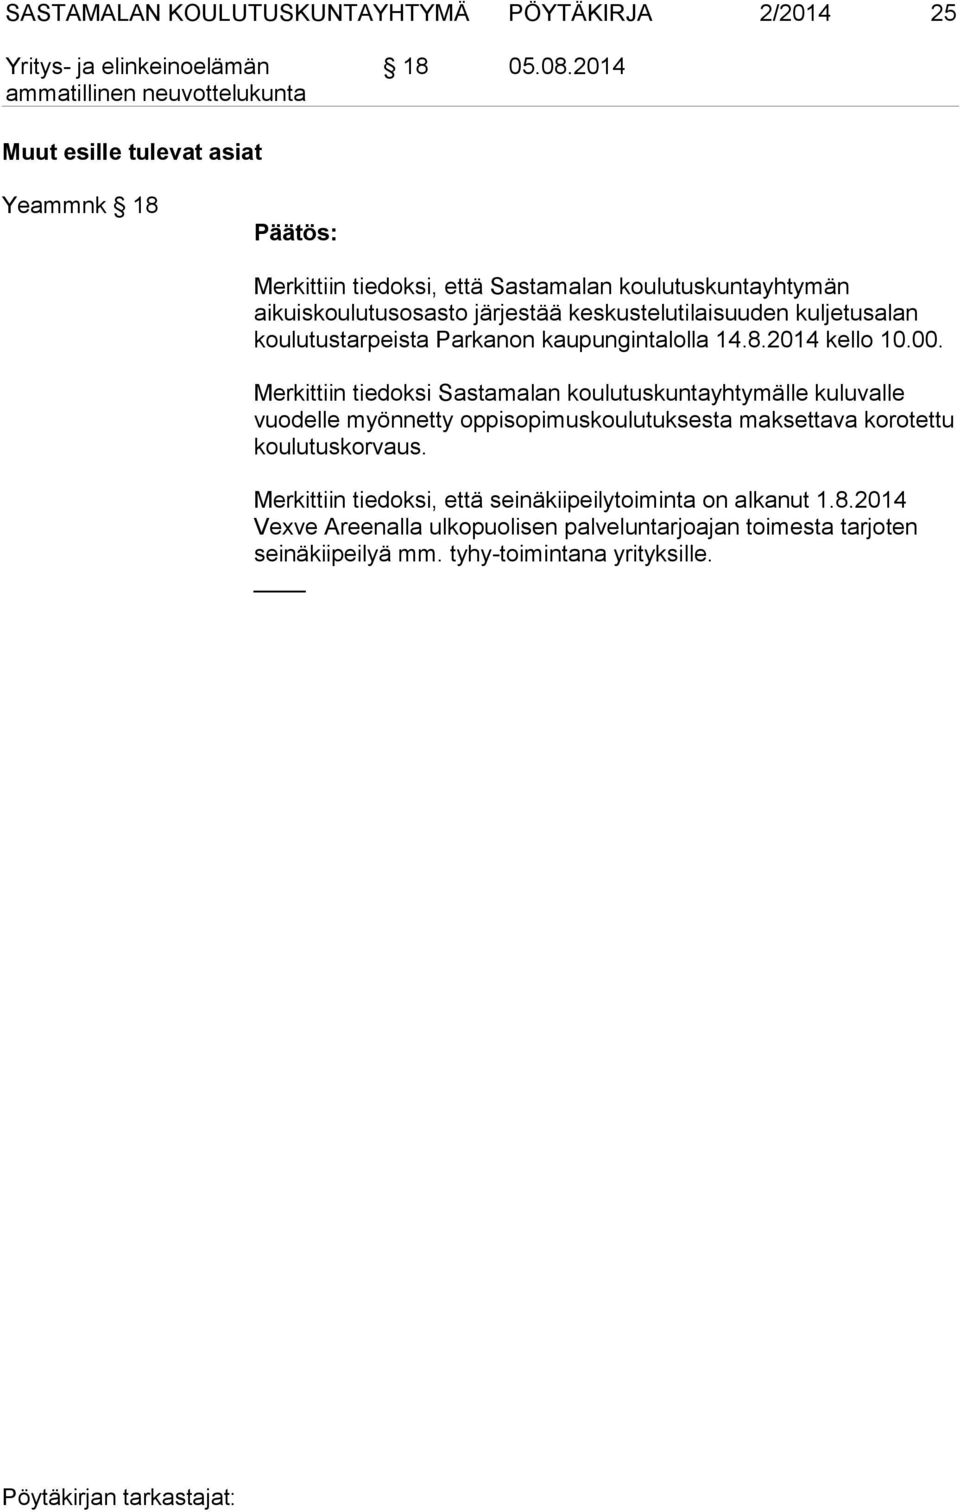 keskustelutilaisuuden kuljetusalan koulutustarpeista Parkanon kaupungintalolla 14.8.2014 kello 10.00.